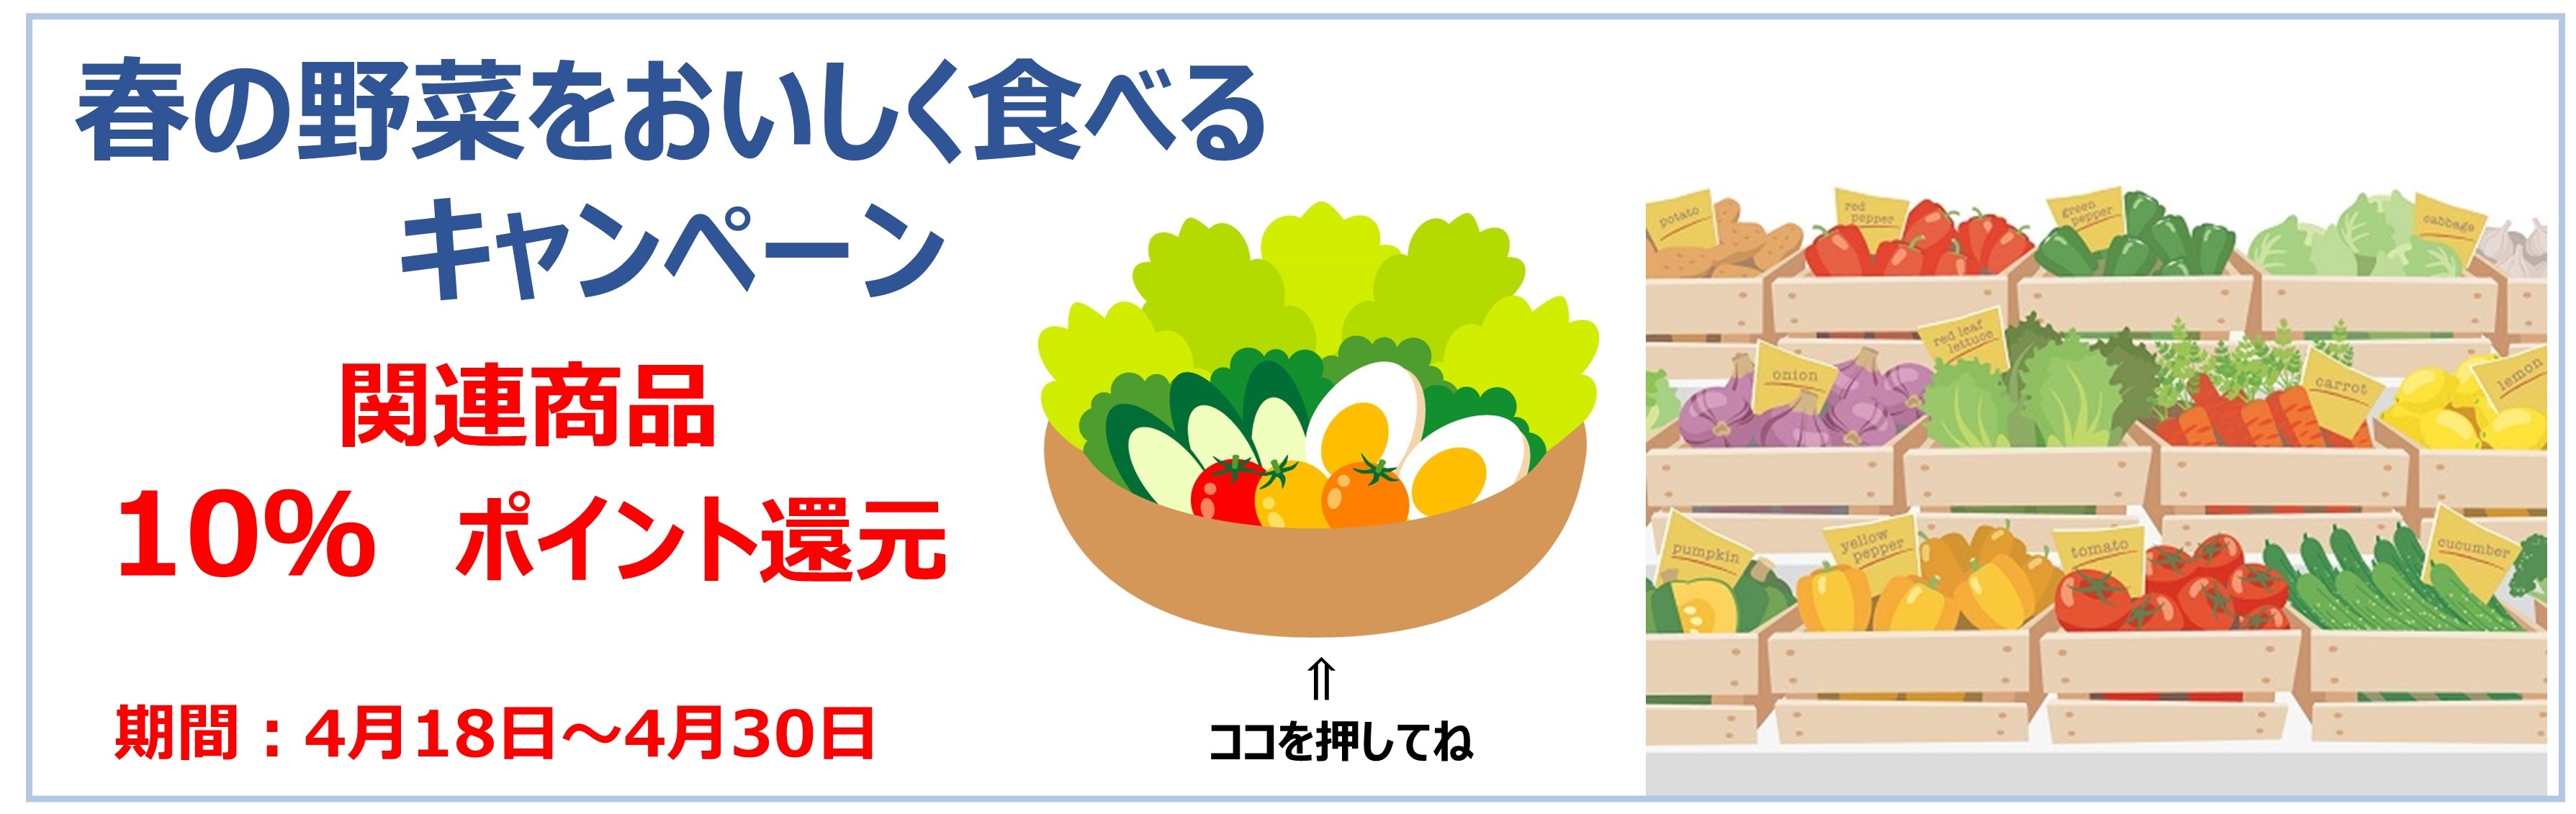 春野菜をおいしく食べるキャンペーン